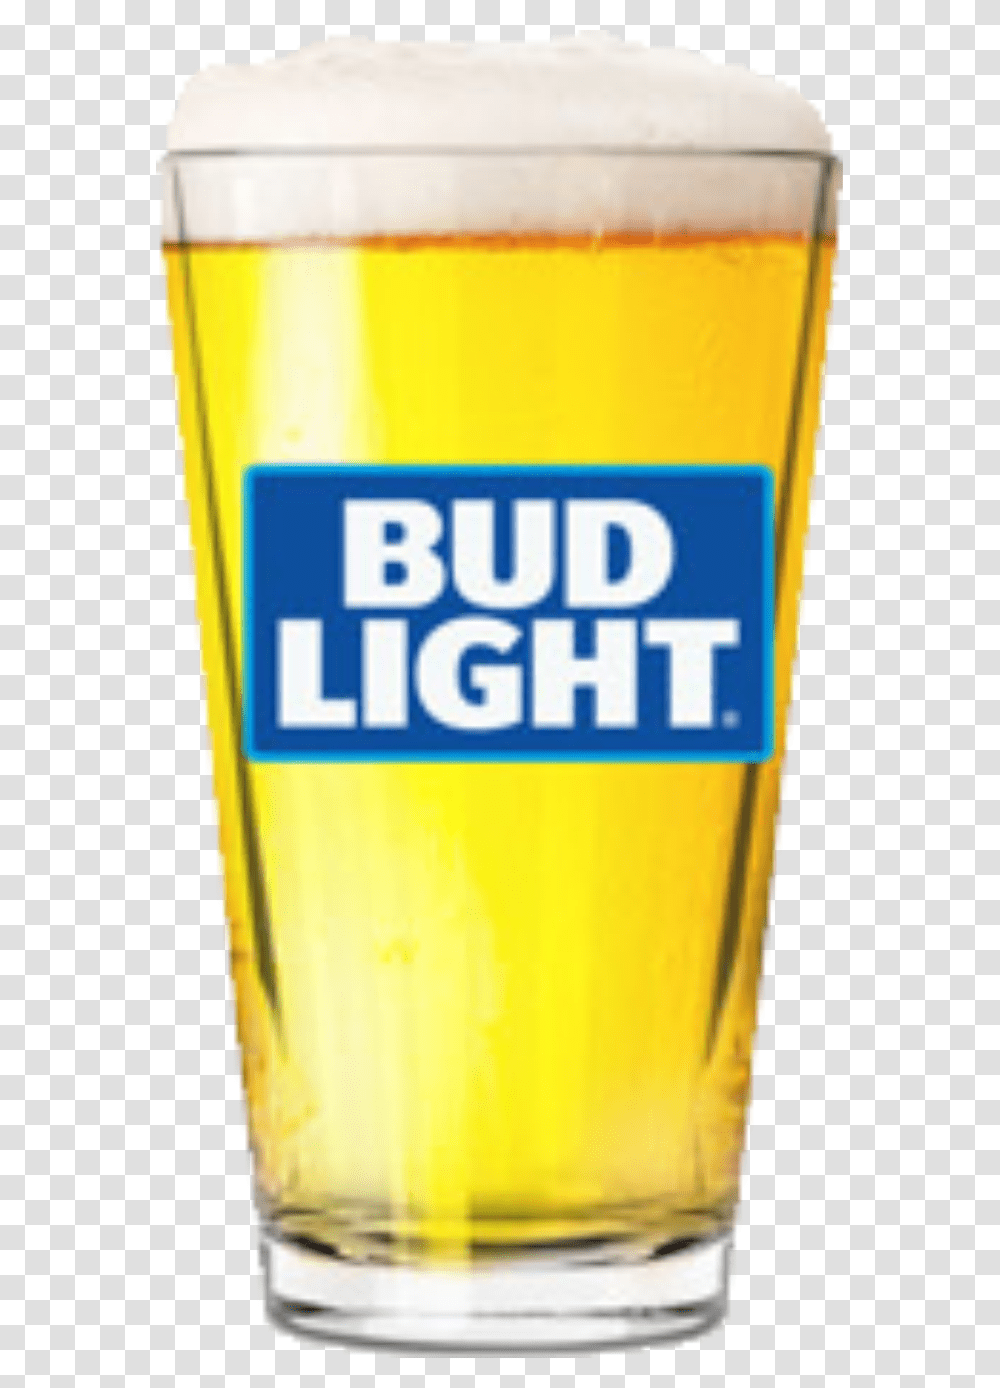 Bud Light 16 Oz Pint Glass Beer Bud Light Draft, Alcohol, Beverage, Drink, Beer Glass Transparent Png